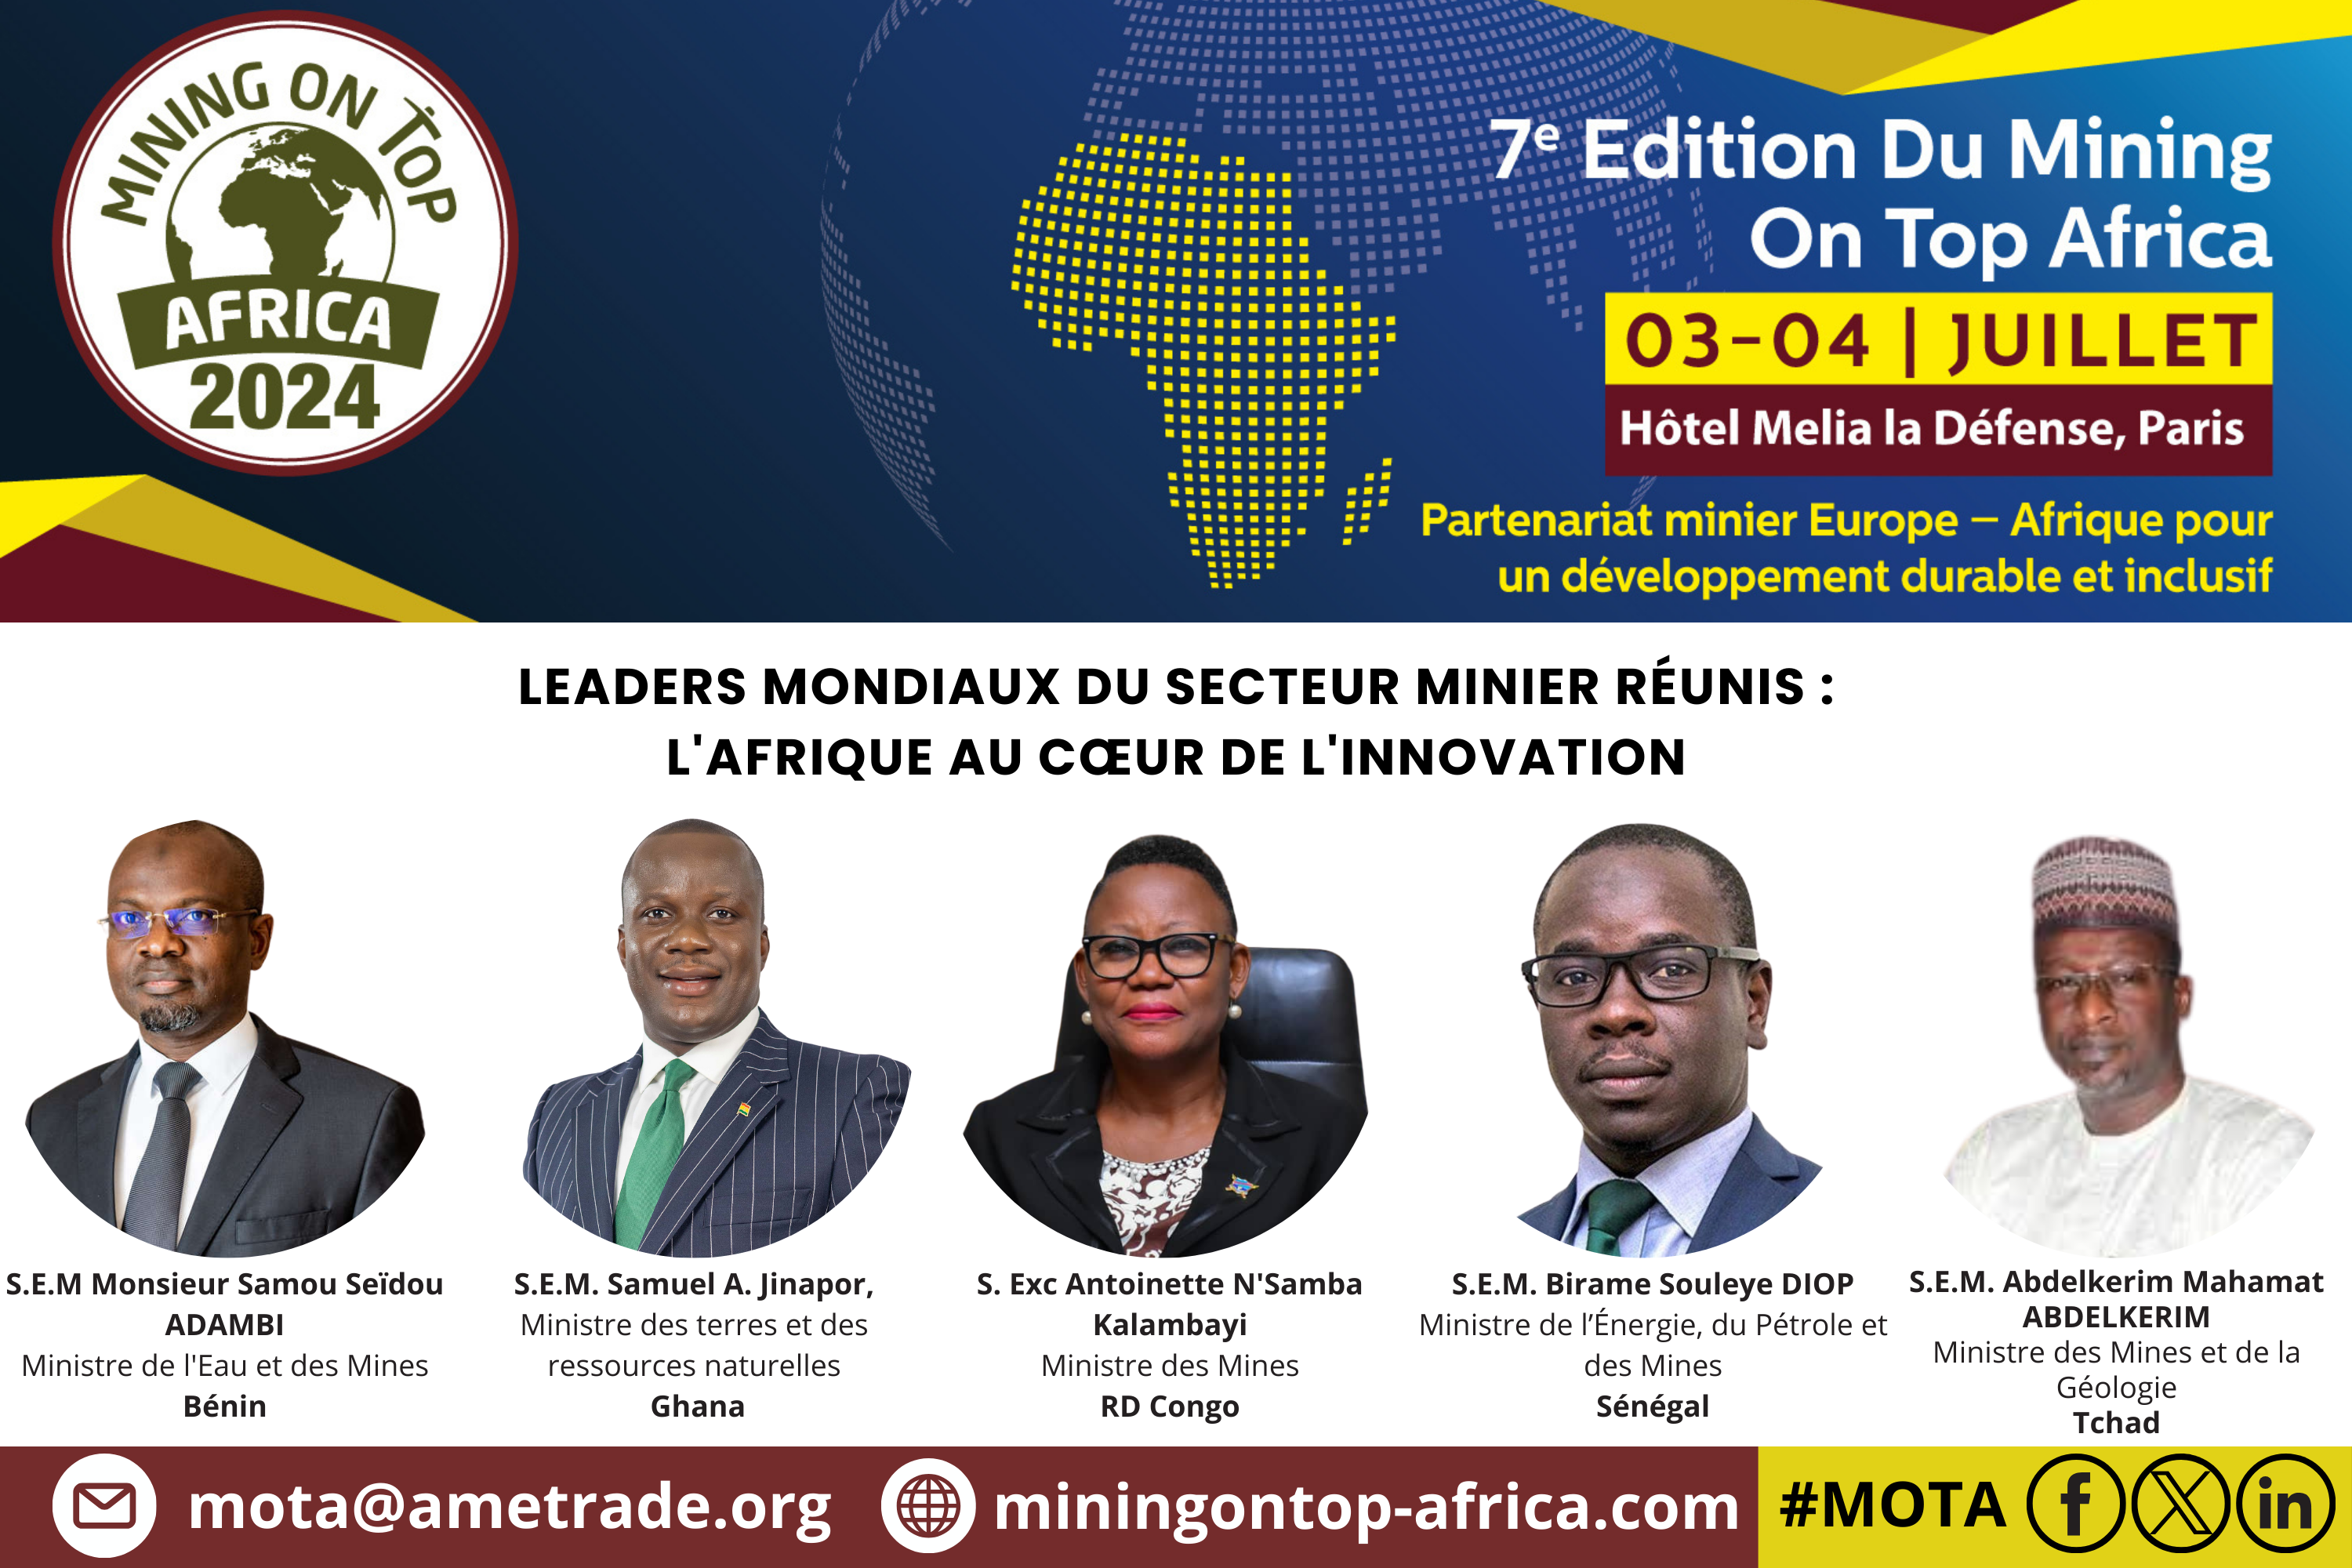 Retrouvez les principales personnalités gouvernementales & les différents speakers présents au Sommet des Mines Africaines à Paris les 3 et 4 juillet prochains